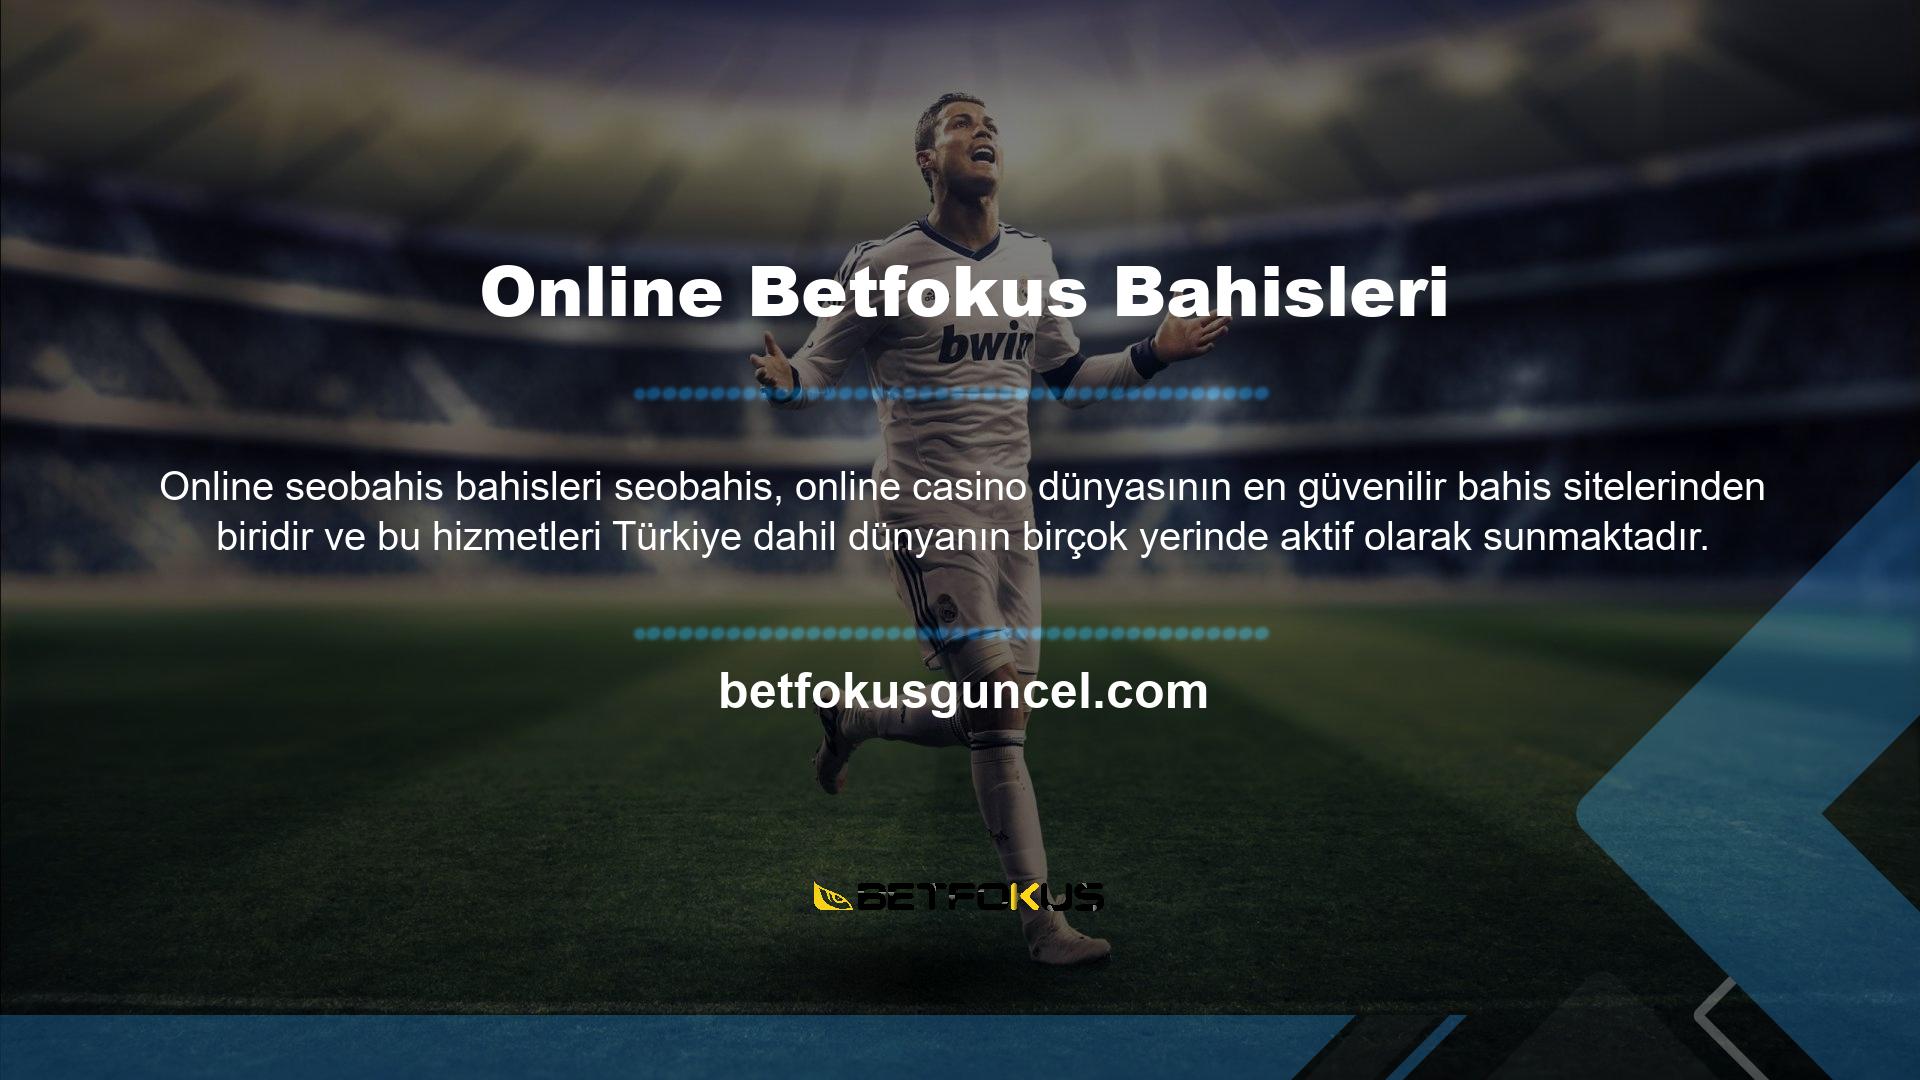 Türk online casino sektöründeki güvenilirlik sorunlarını tamamen ortadan kaldıran online Betfokus Bahis, Türkiye ve dünyanın birçok yerinde fırsatlar sunan web sitesi sayesinde önerilen casino sektöründe 1 numaradır